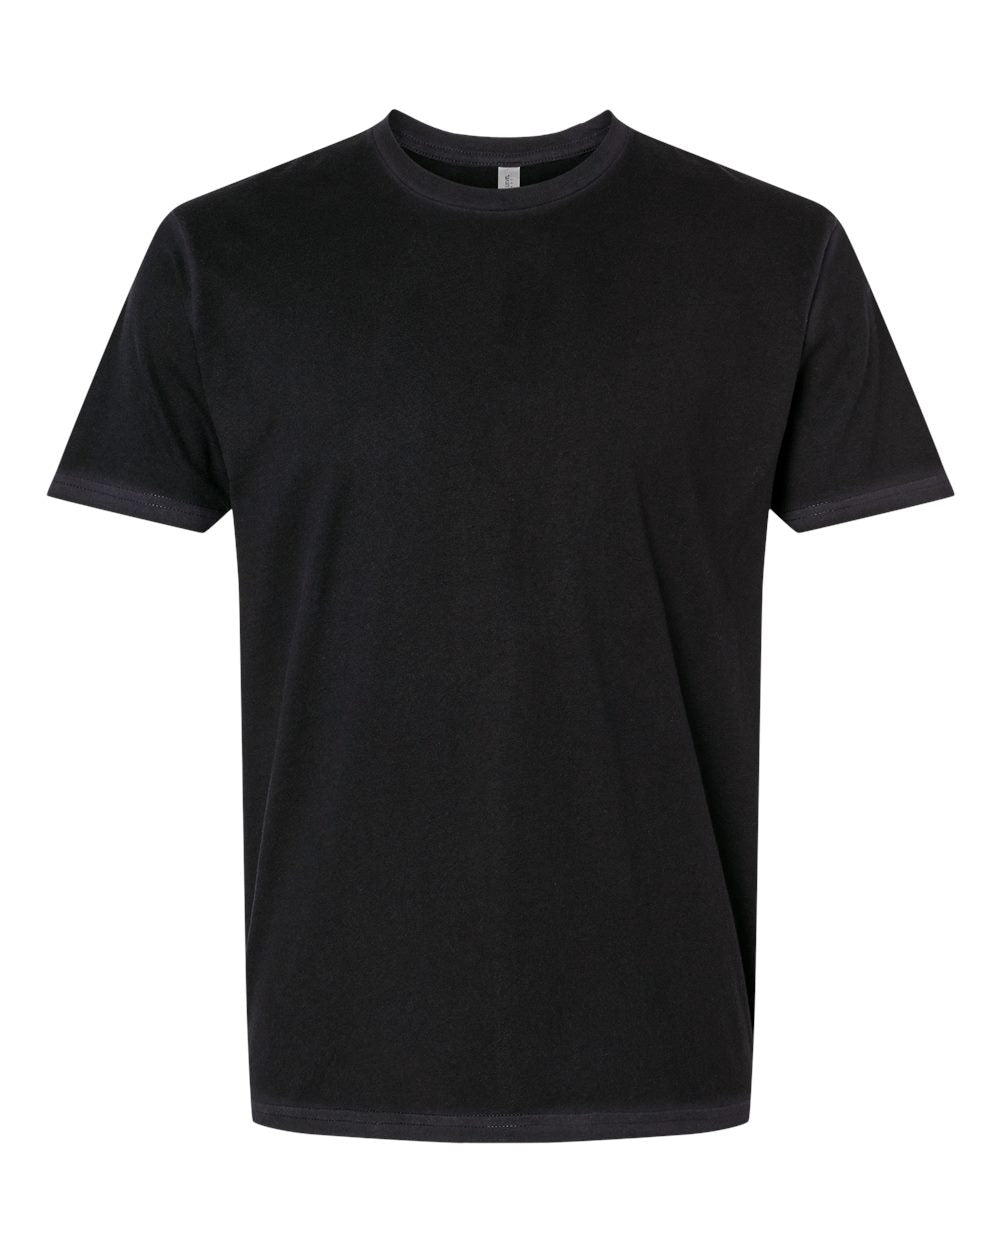 Next Level - Unisex Soft Wash T-Shirt - 3600SW